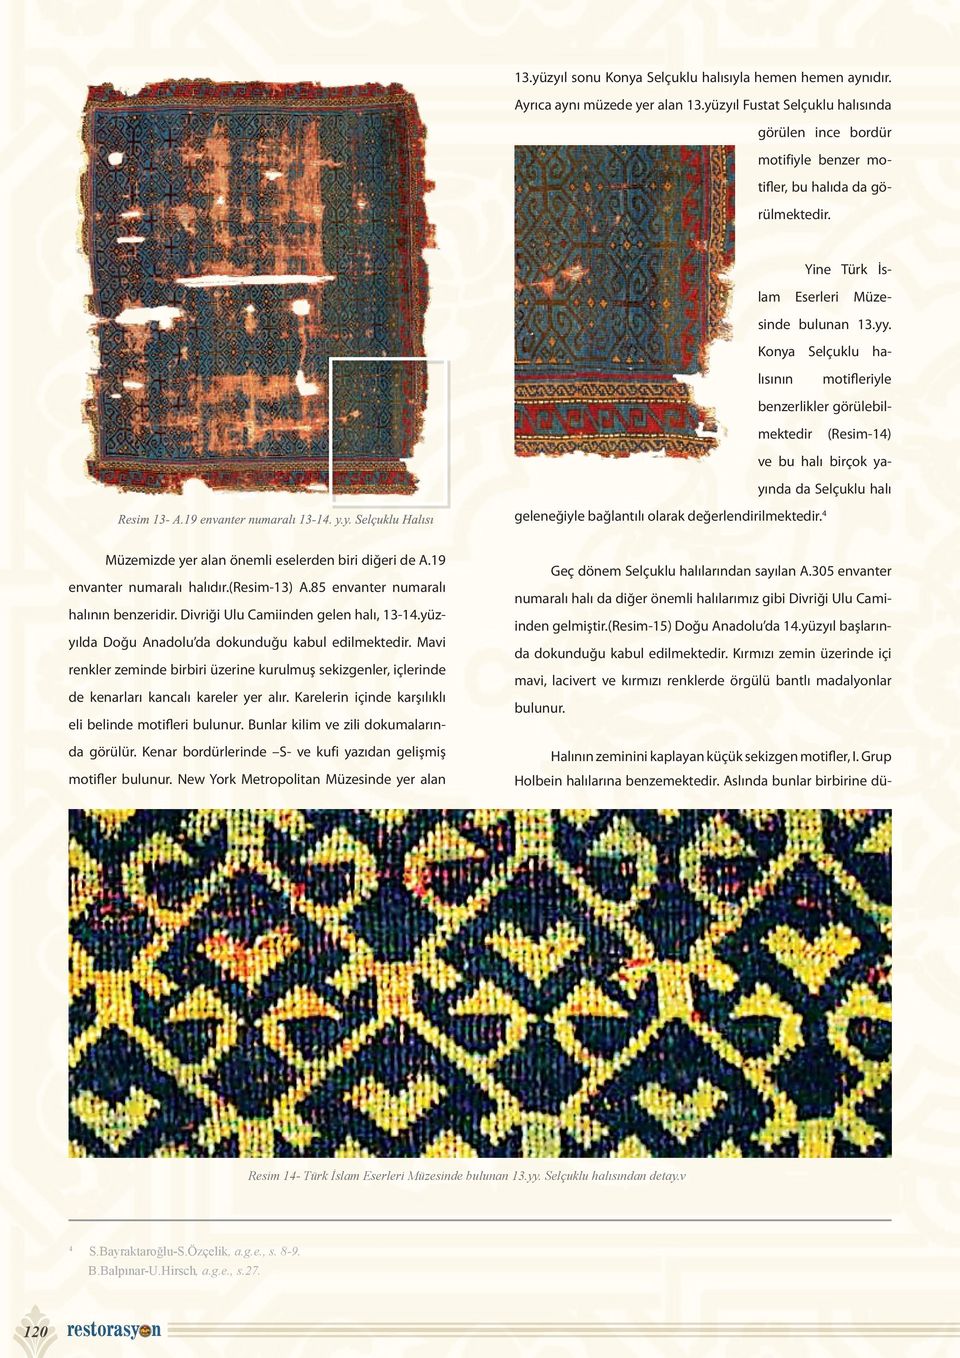 Konya Selçuklu halısının motifleriyle benzerlikler görülebilmektedir (Resim-14) ve bu halı birçok yayında da Selçuklu halı geleneğiyle bağlantılı olarak değerlendirilmektedir.